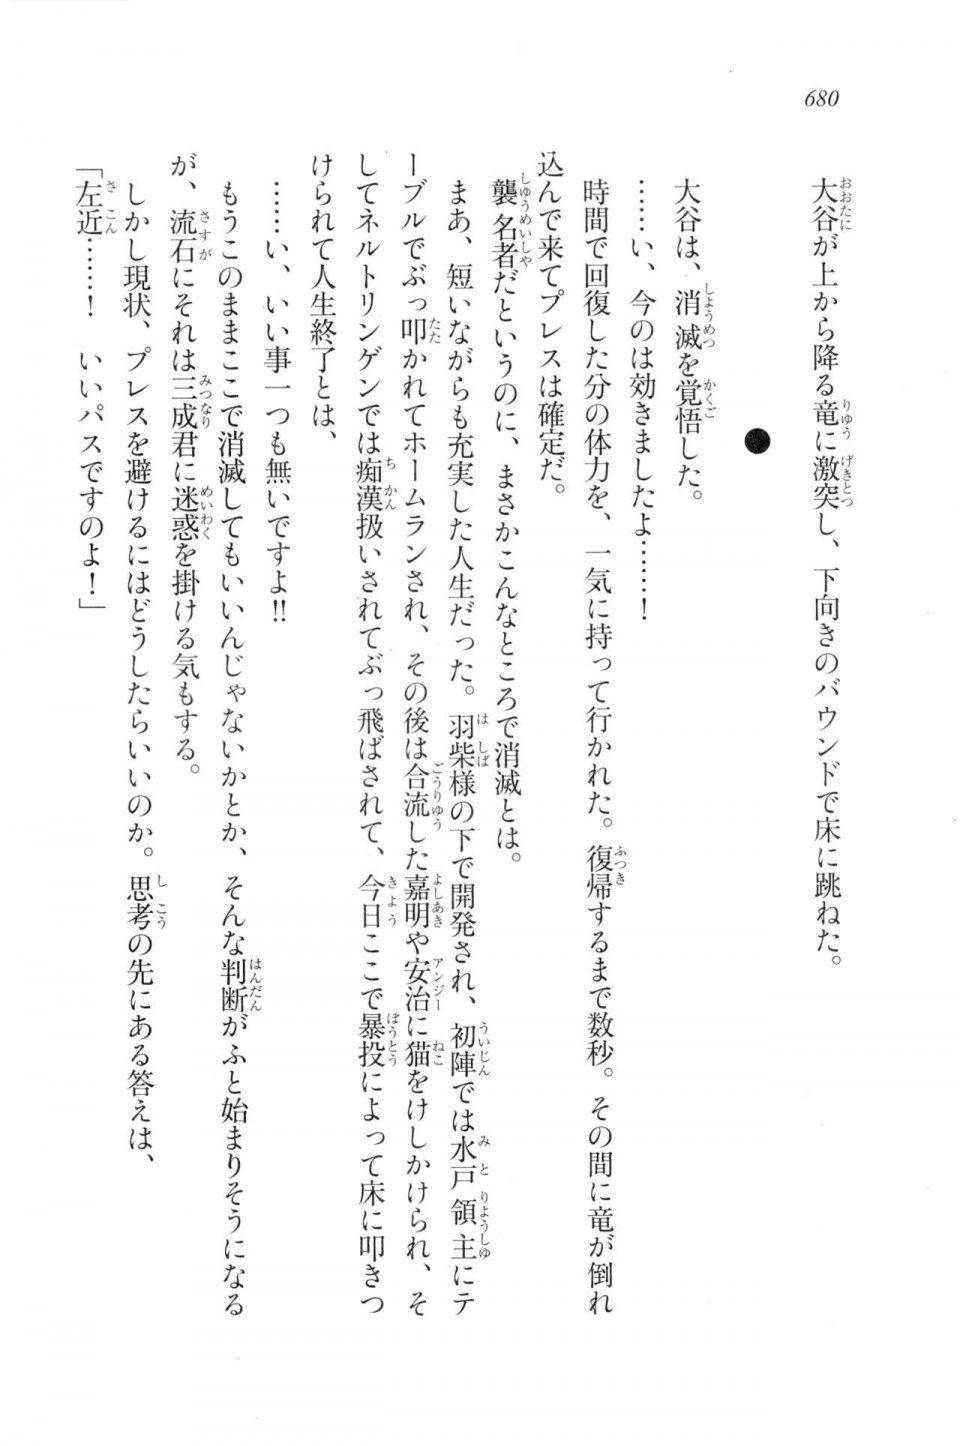 Kyoukai Senjou no Horizon LN Vol 20(8B) - Photo #680